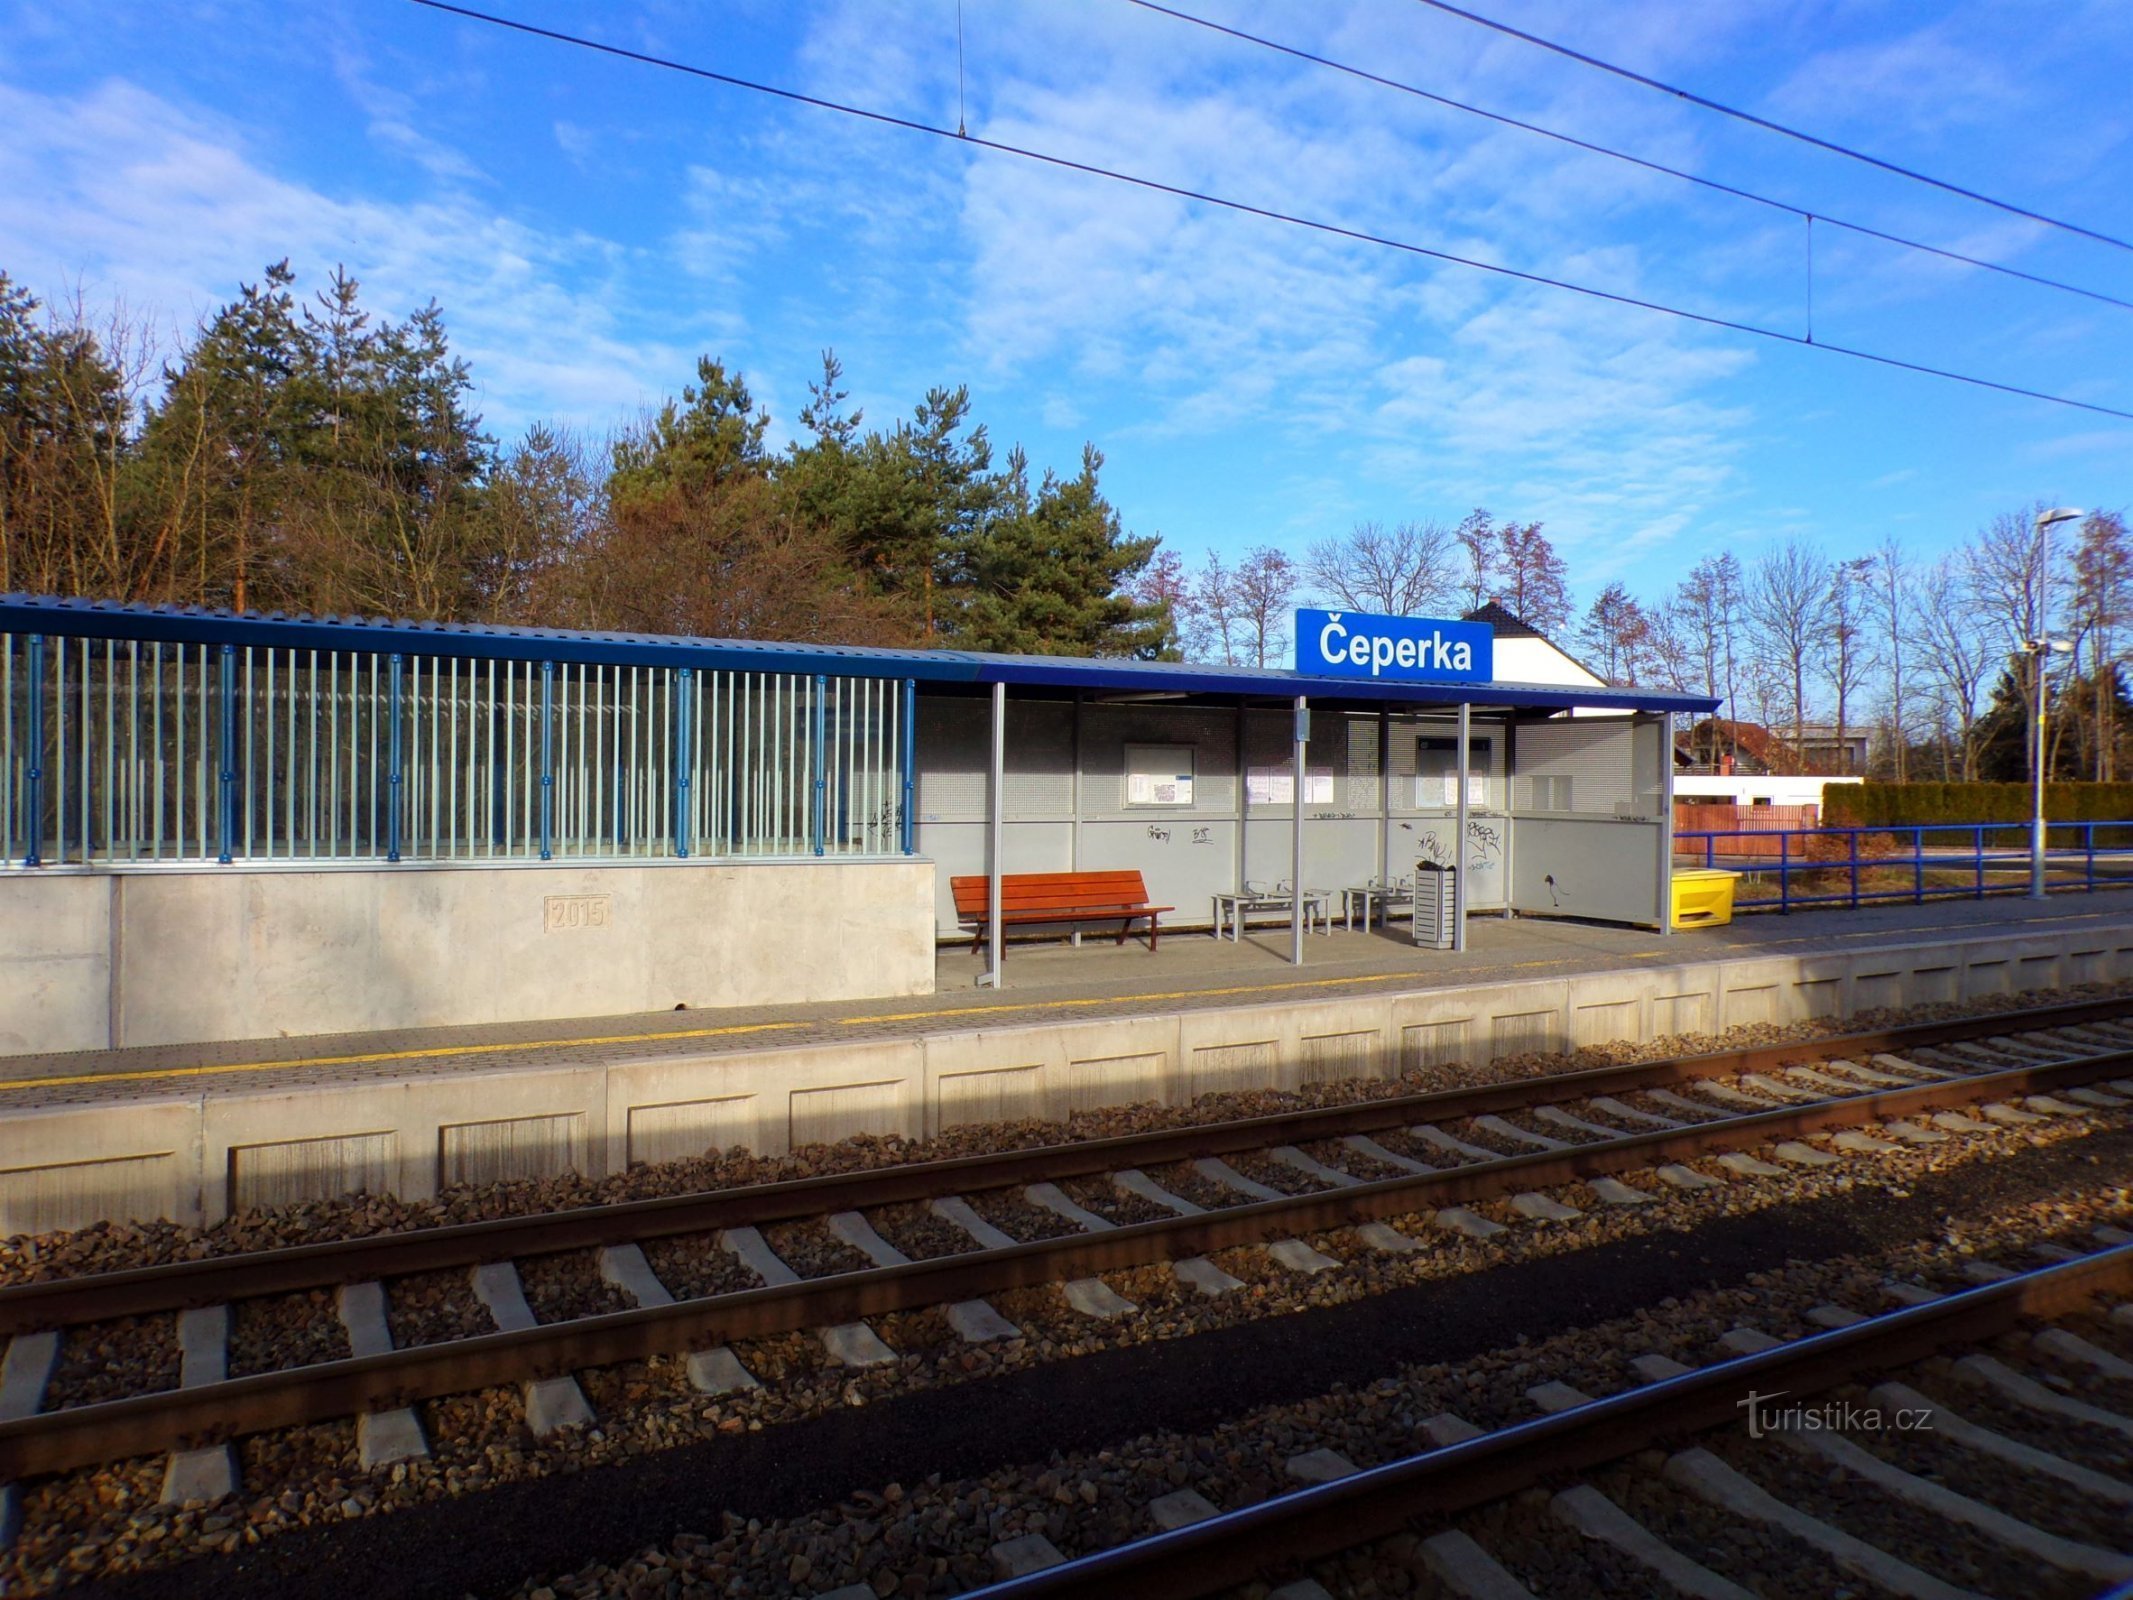 Estación de tren (Čeperka, 18.2.2022/XNUMX/XNUMX)